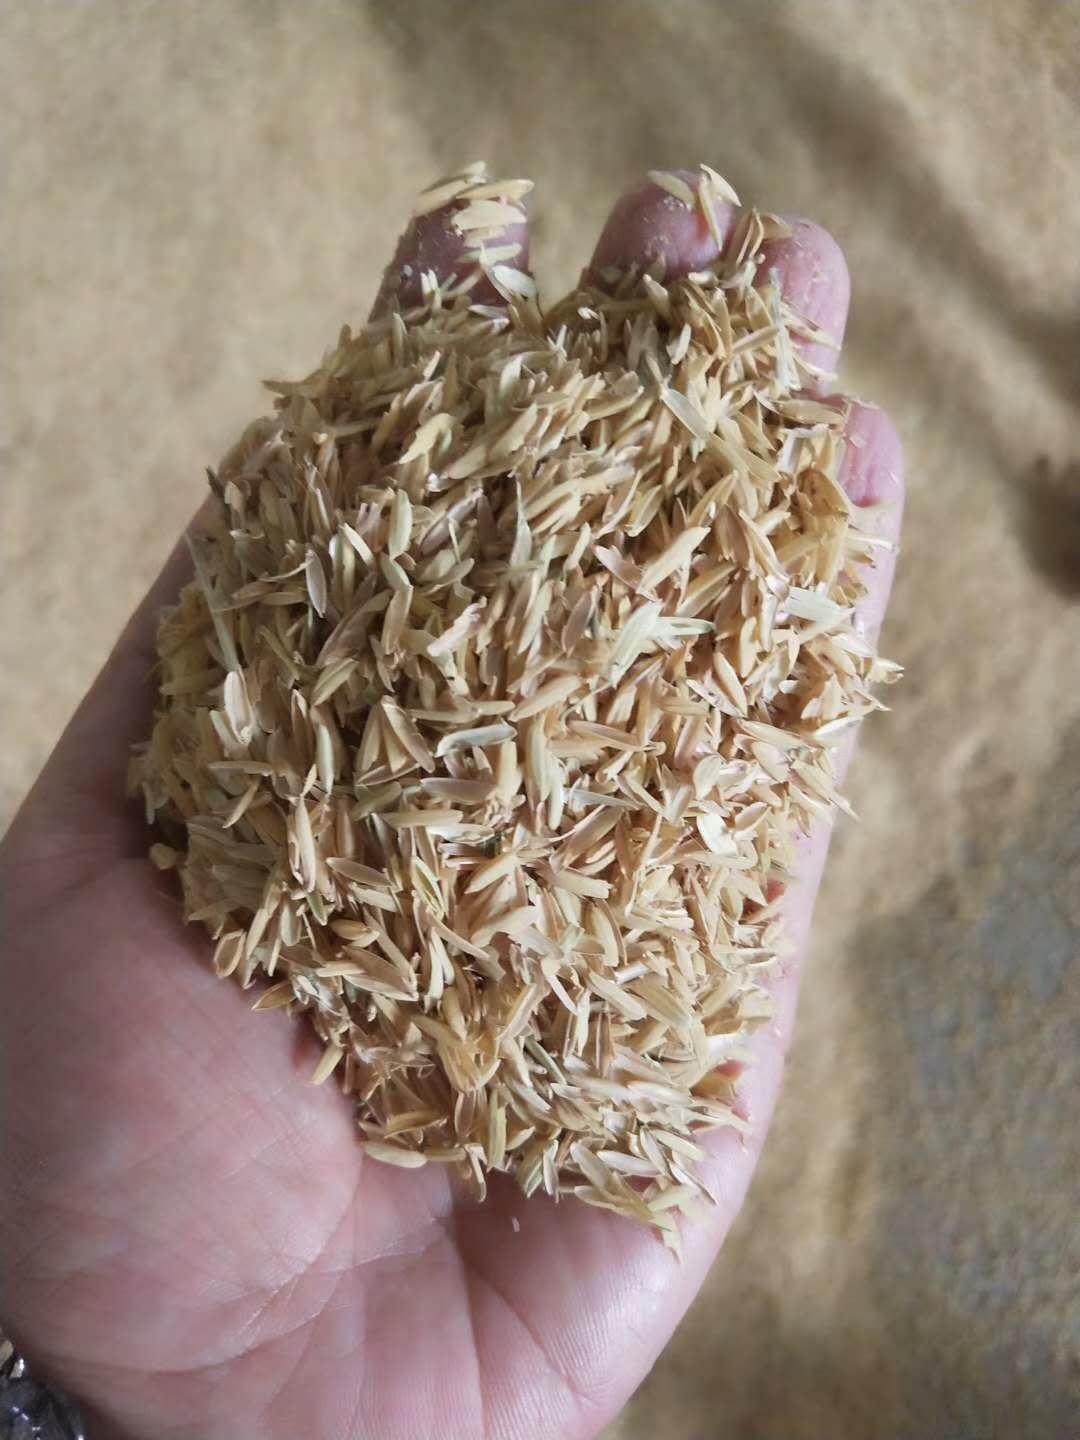 [稻壳批发]压缩稻壳 压块稻壳 压块谷壳 散装稻壳 垫料稻壳价格0